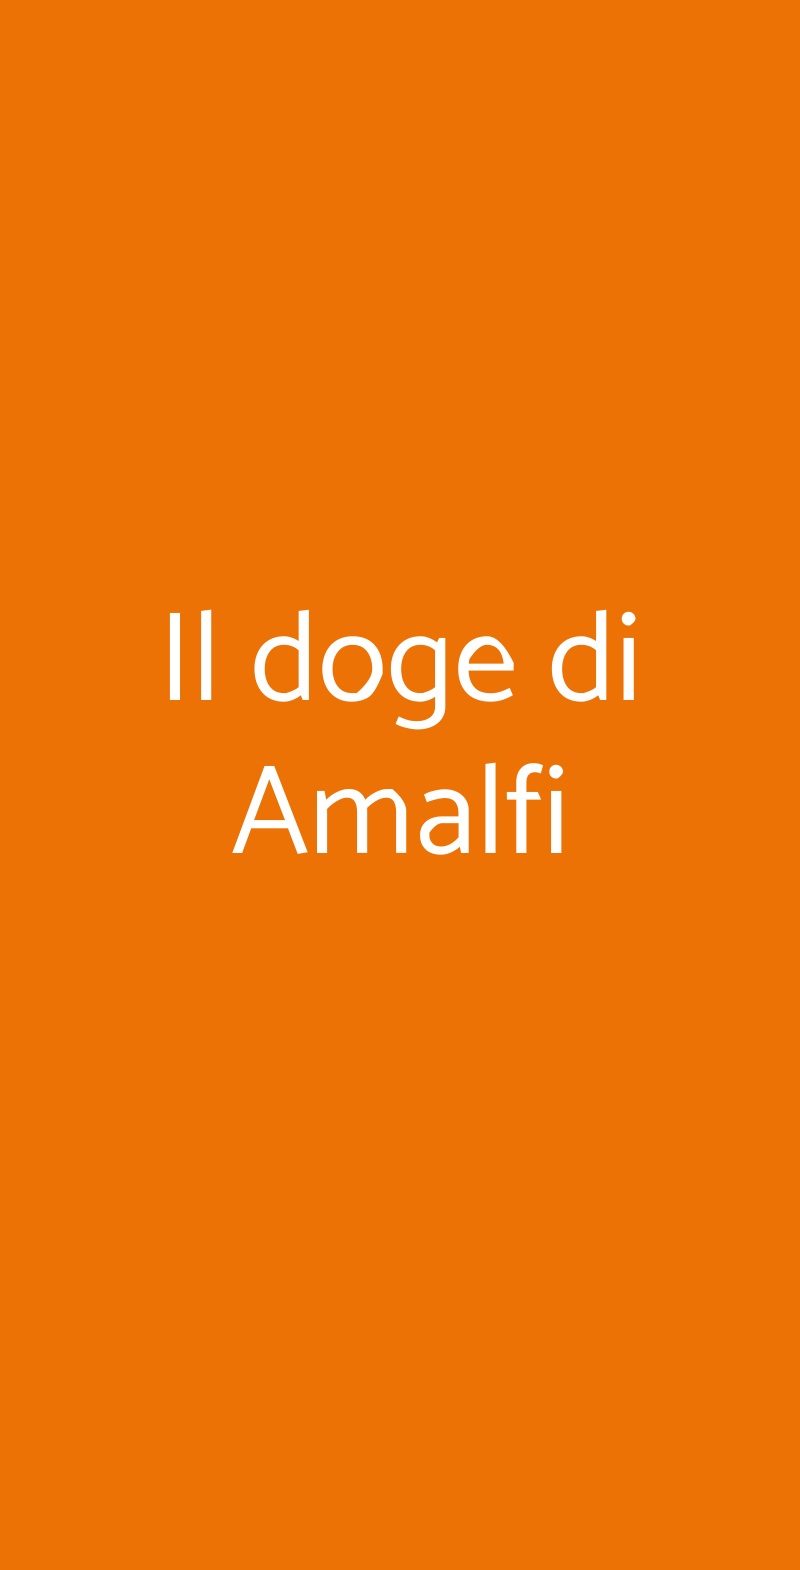 Il doge di Amalfi Milano menù 1 pagina